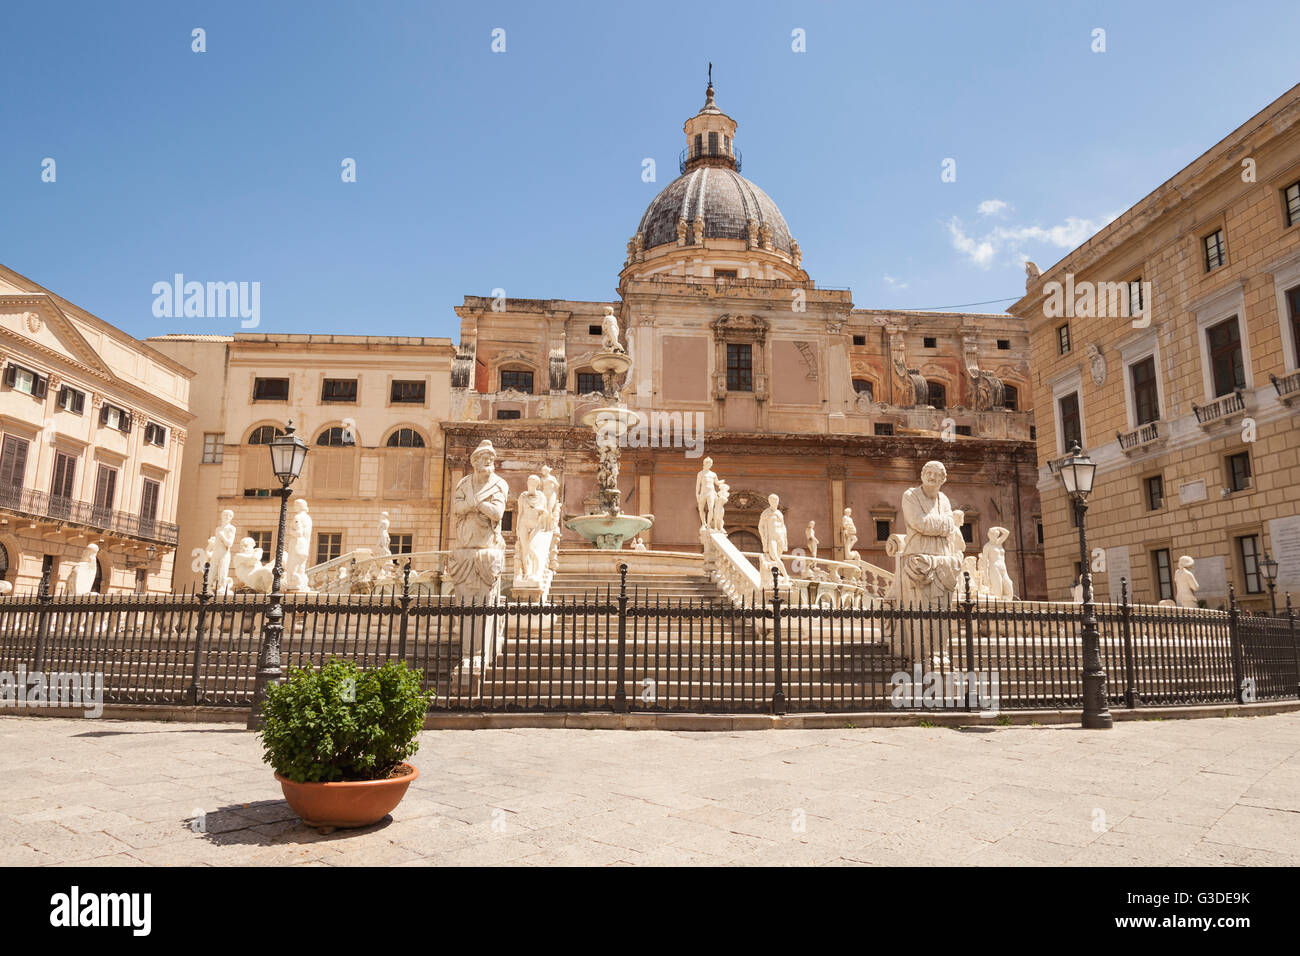 Fontana Pretoria und Kirche Santa Caterina, Piazza Pretoria, Palermo, Sizilien, Italien Stockfoto